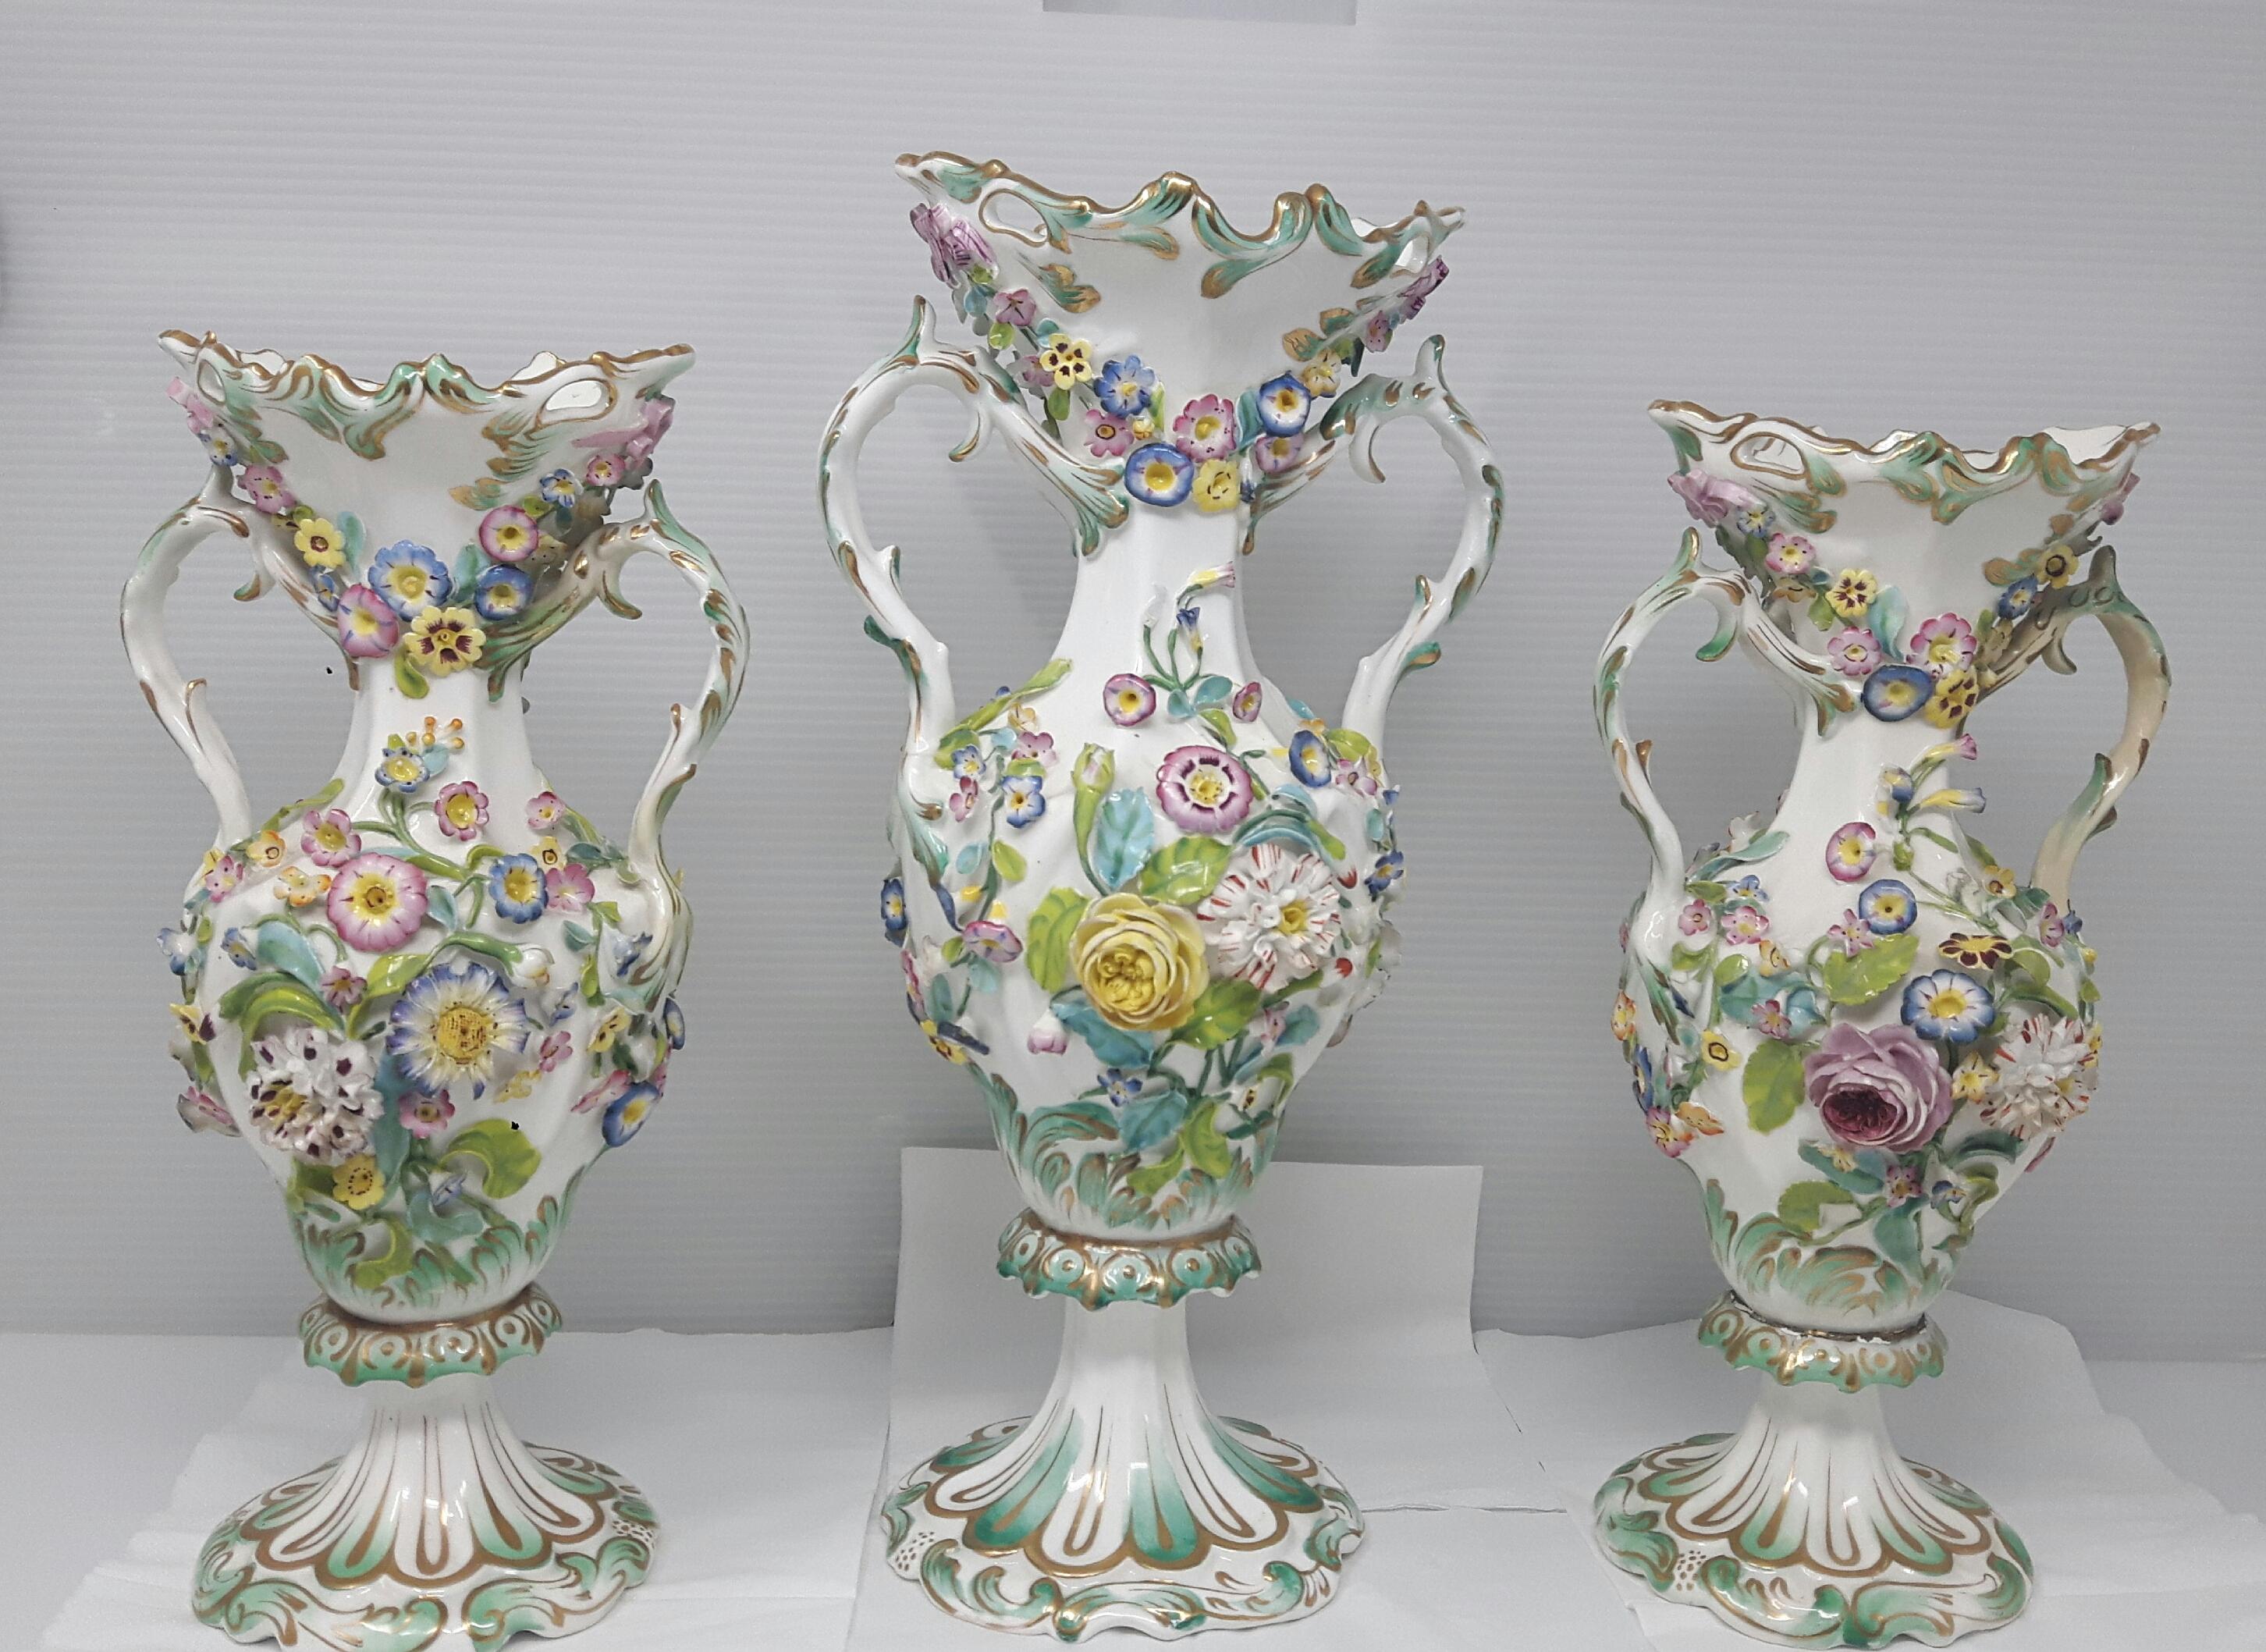 Garniture de vases Minton ou Coalport, vers 1830, dans le style Meissen du XVIIIe siècle, avec des fleurs en céramique faites à la main et incrustées sur tout le pourtour.
 